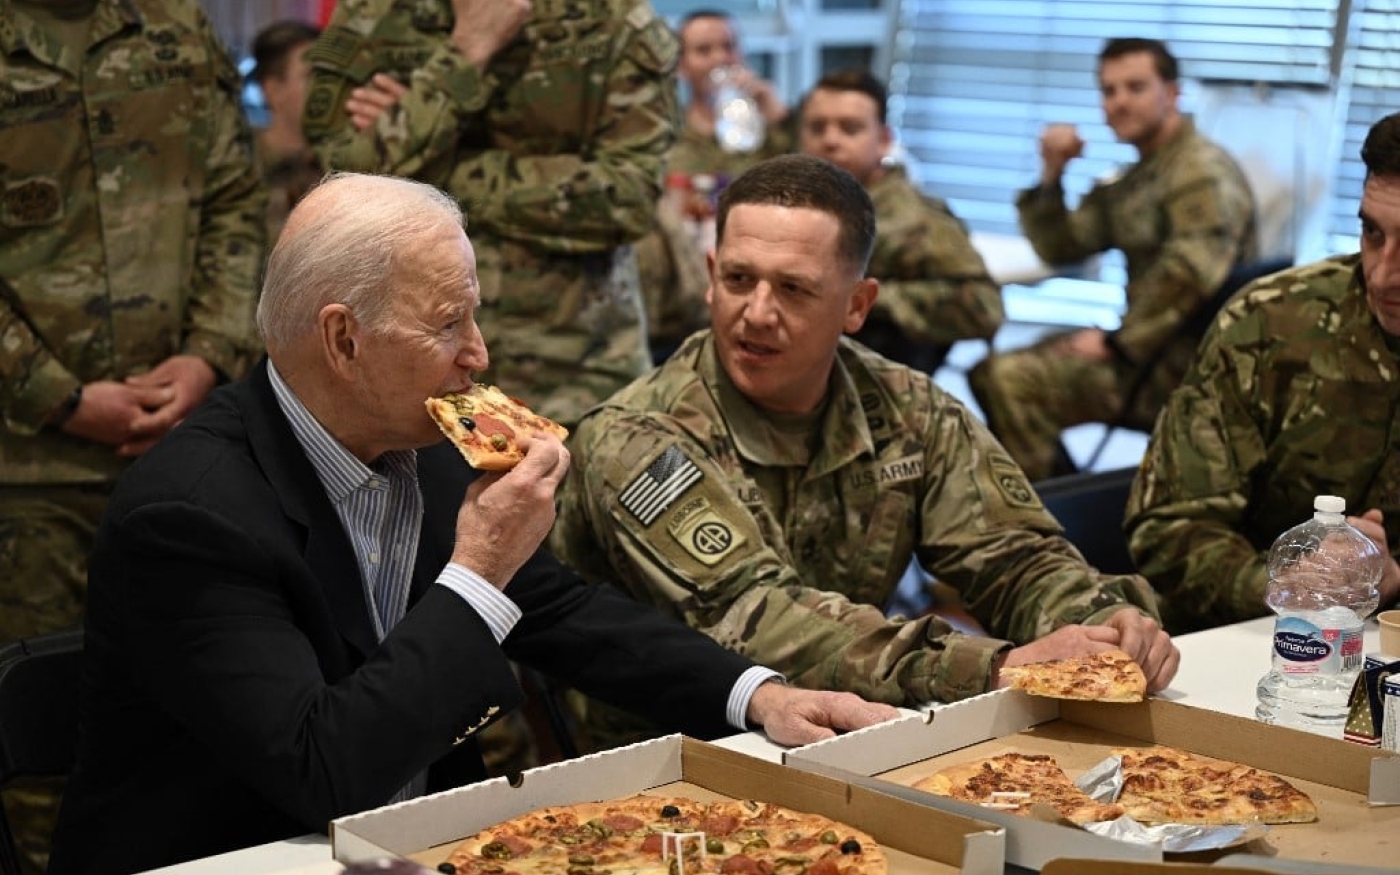 Joe Biden rencontre des militaires de la 82e division aéroportée, dans la ville polonaise de Rzeszow, à environ 100 kilomètres de la frontière avec l’Ukraine, le 25 mars 2022 (AFP/Brendan Smialowski)